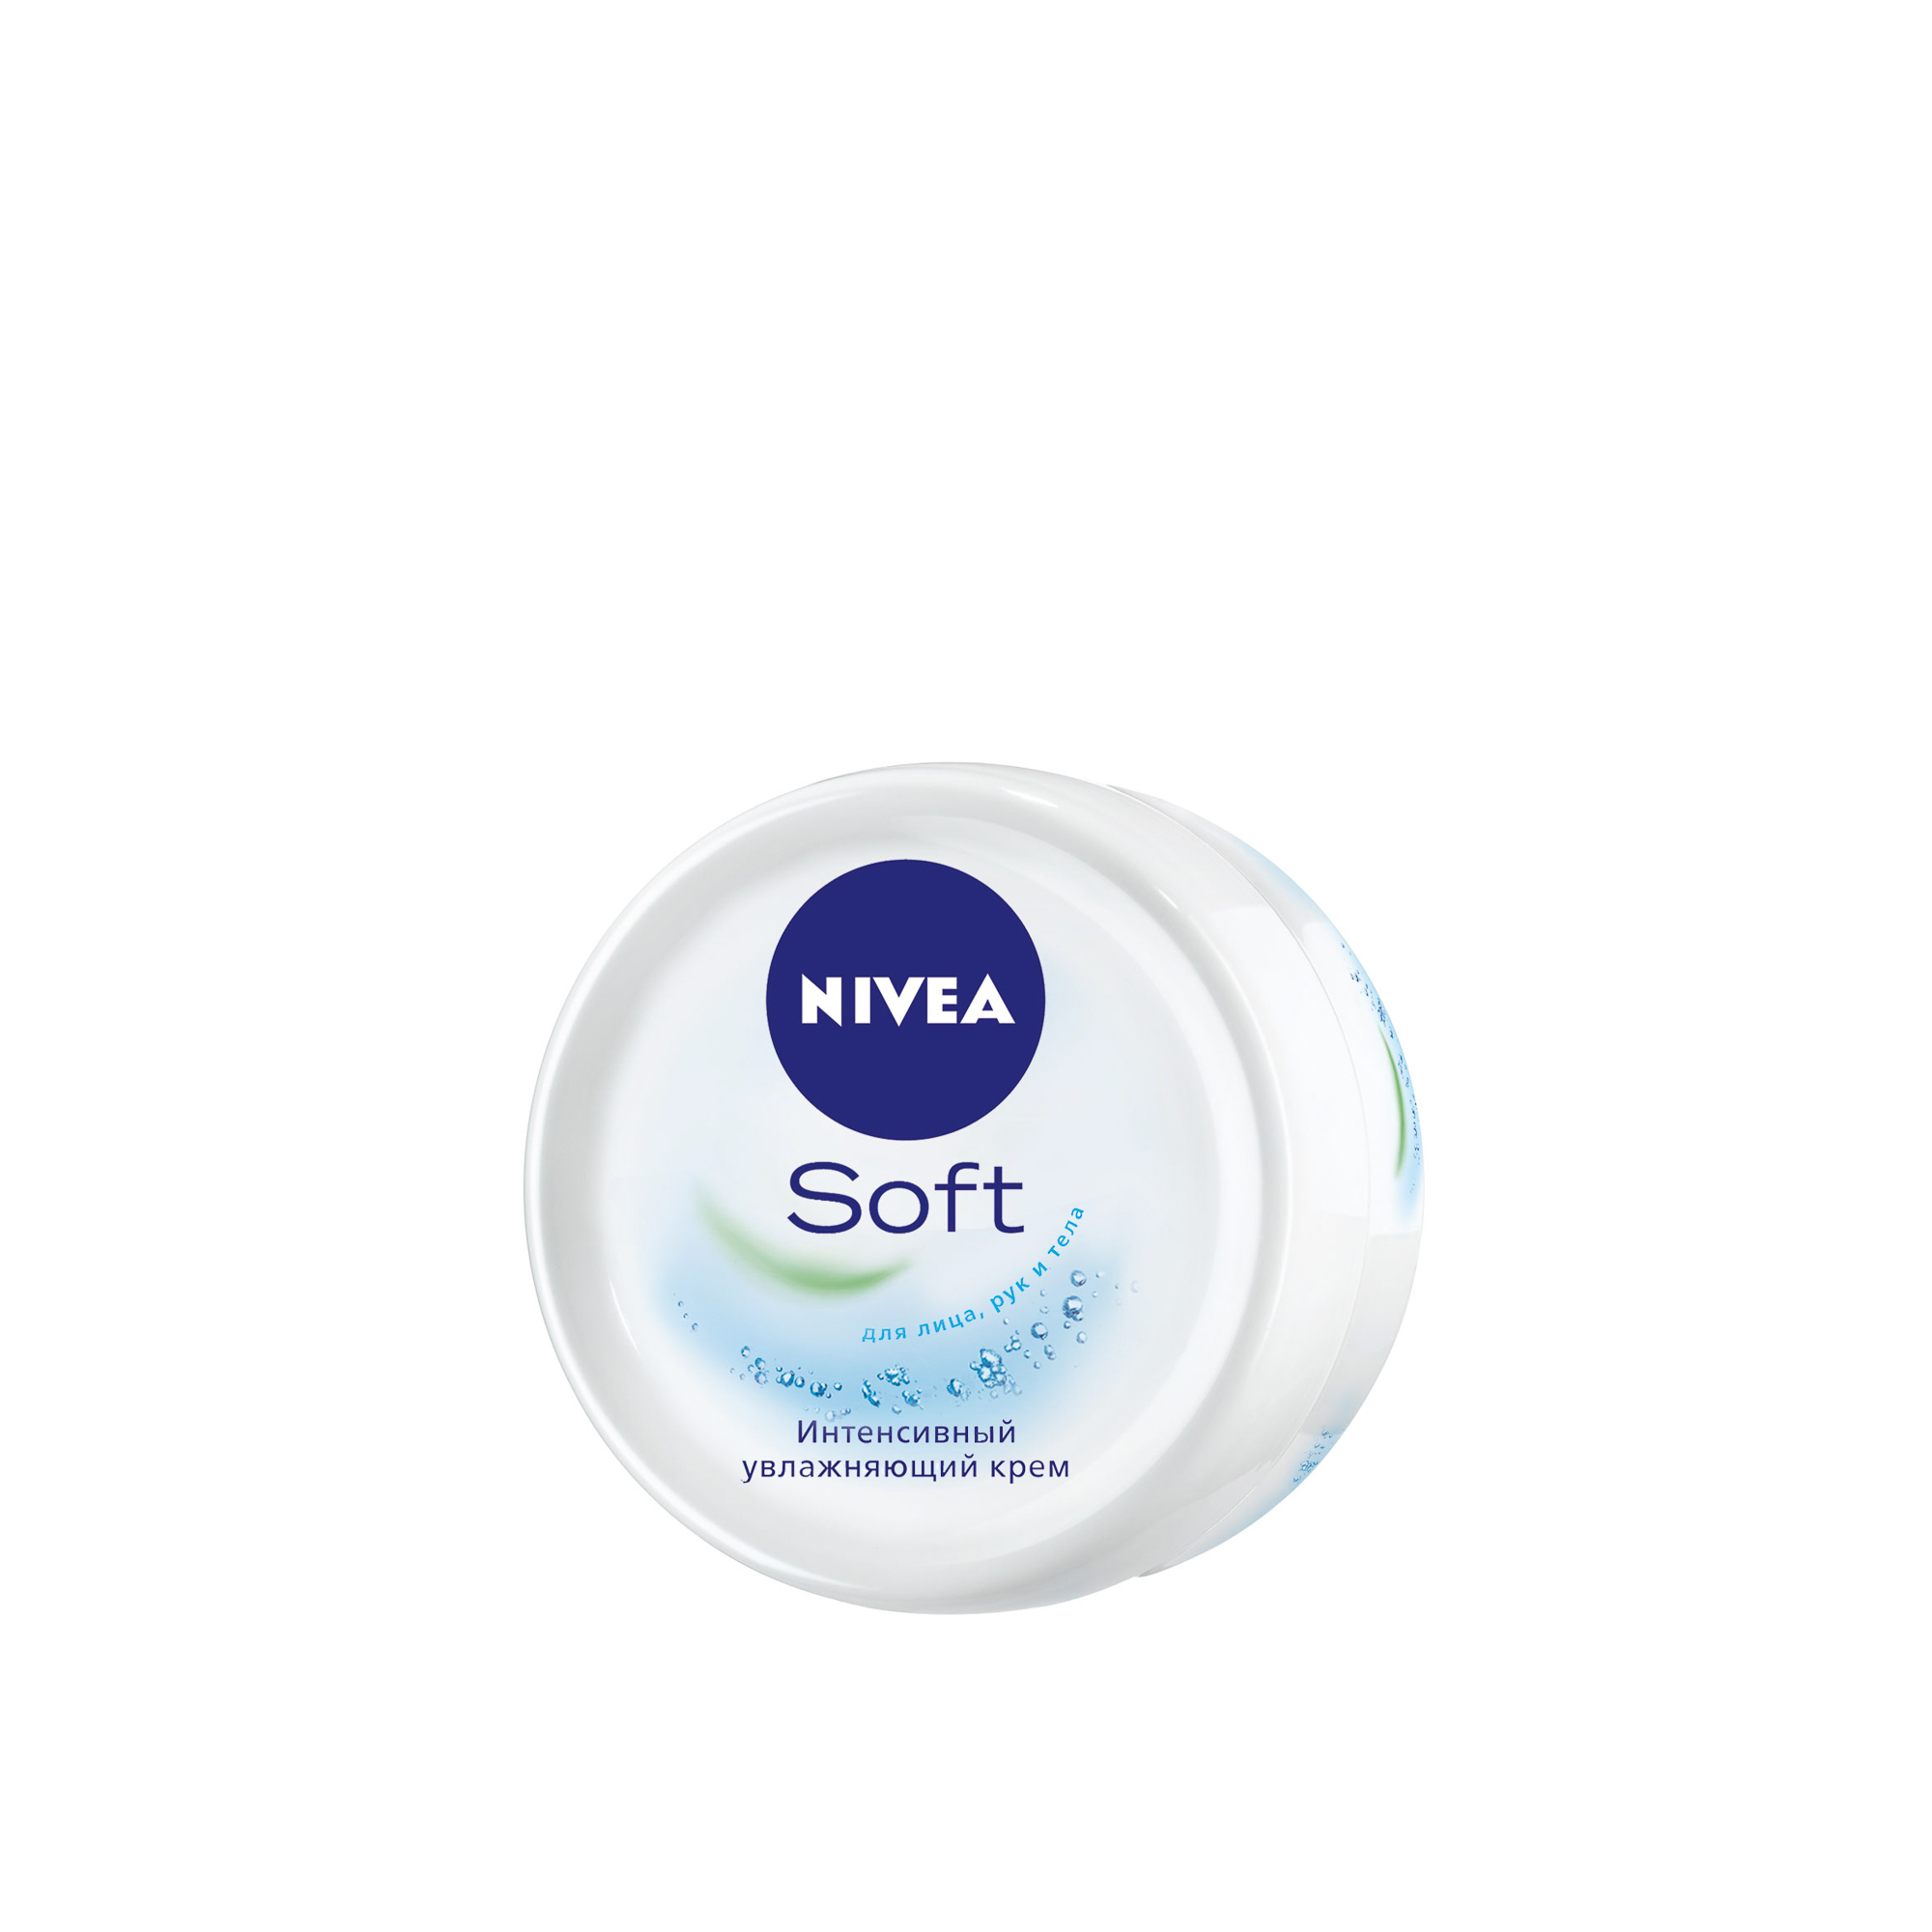 Крем интенсивный увлажняющий Nivea Soft 100мл (89059) крем интенсивный увлажняющий nivea soft 100мл 89059